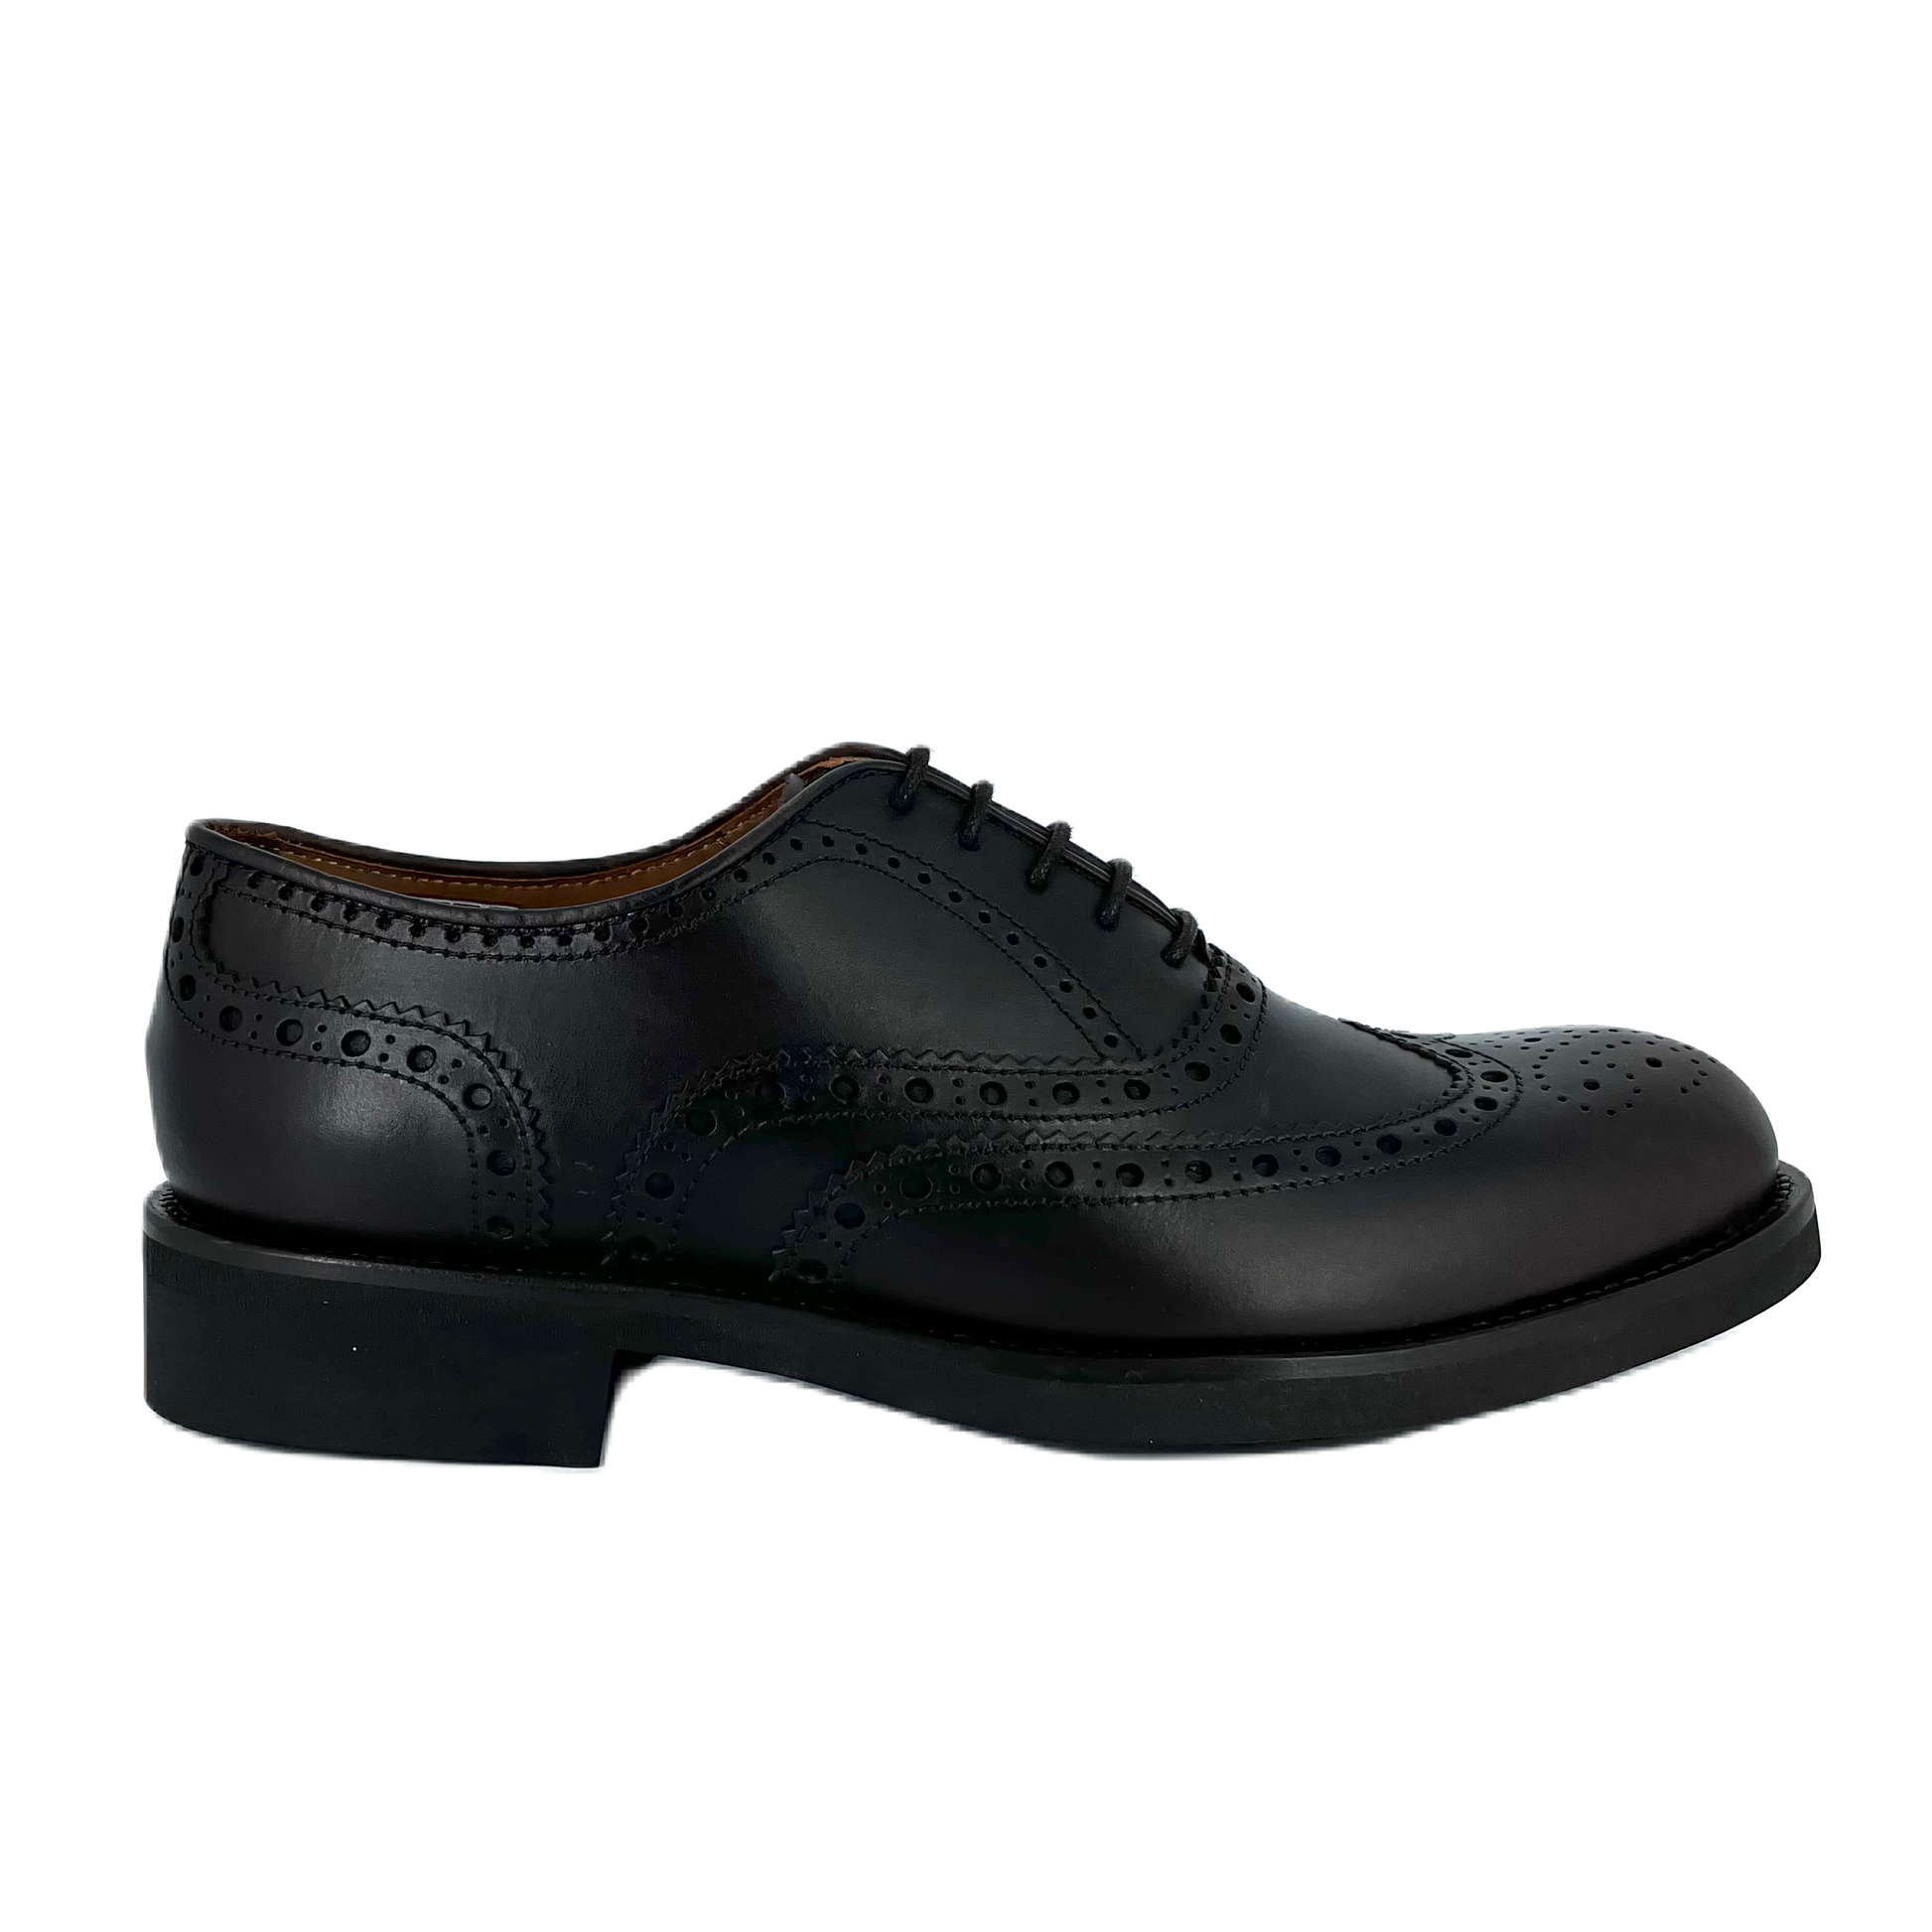 Zapatos Oxford De La Marca Lottusse Para Hombre Modelo Holborn En Color Negro